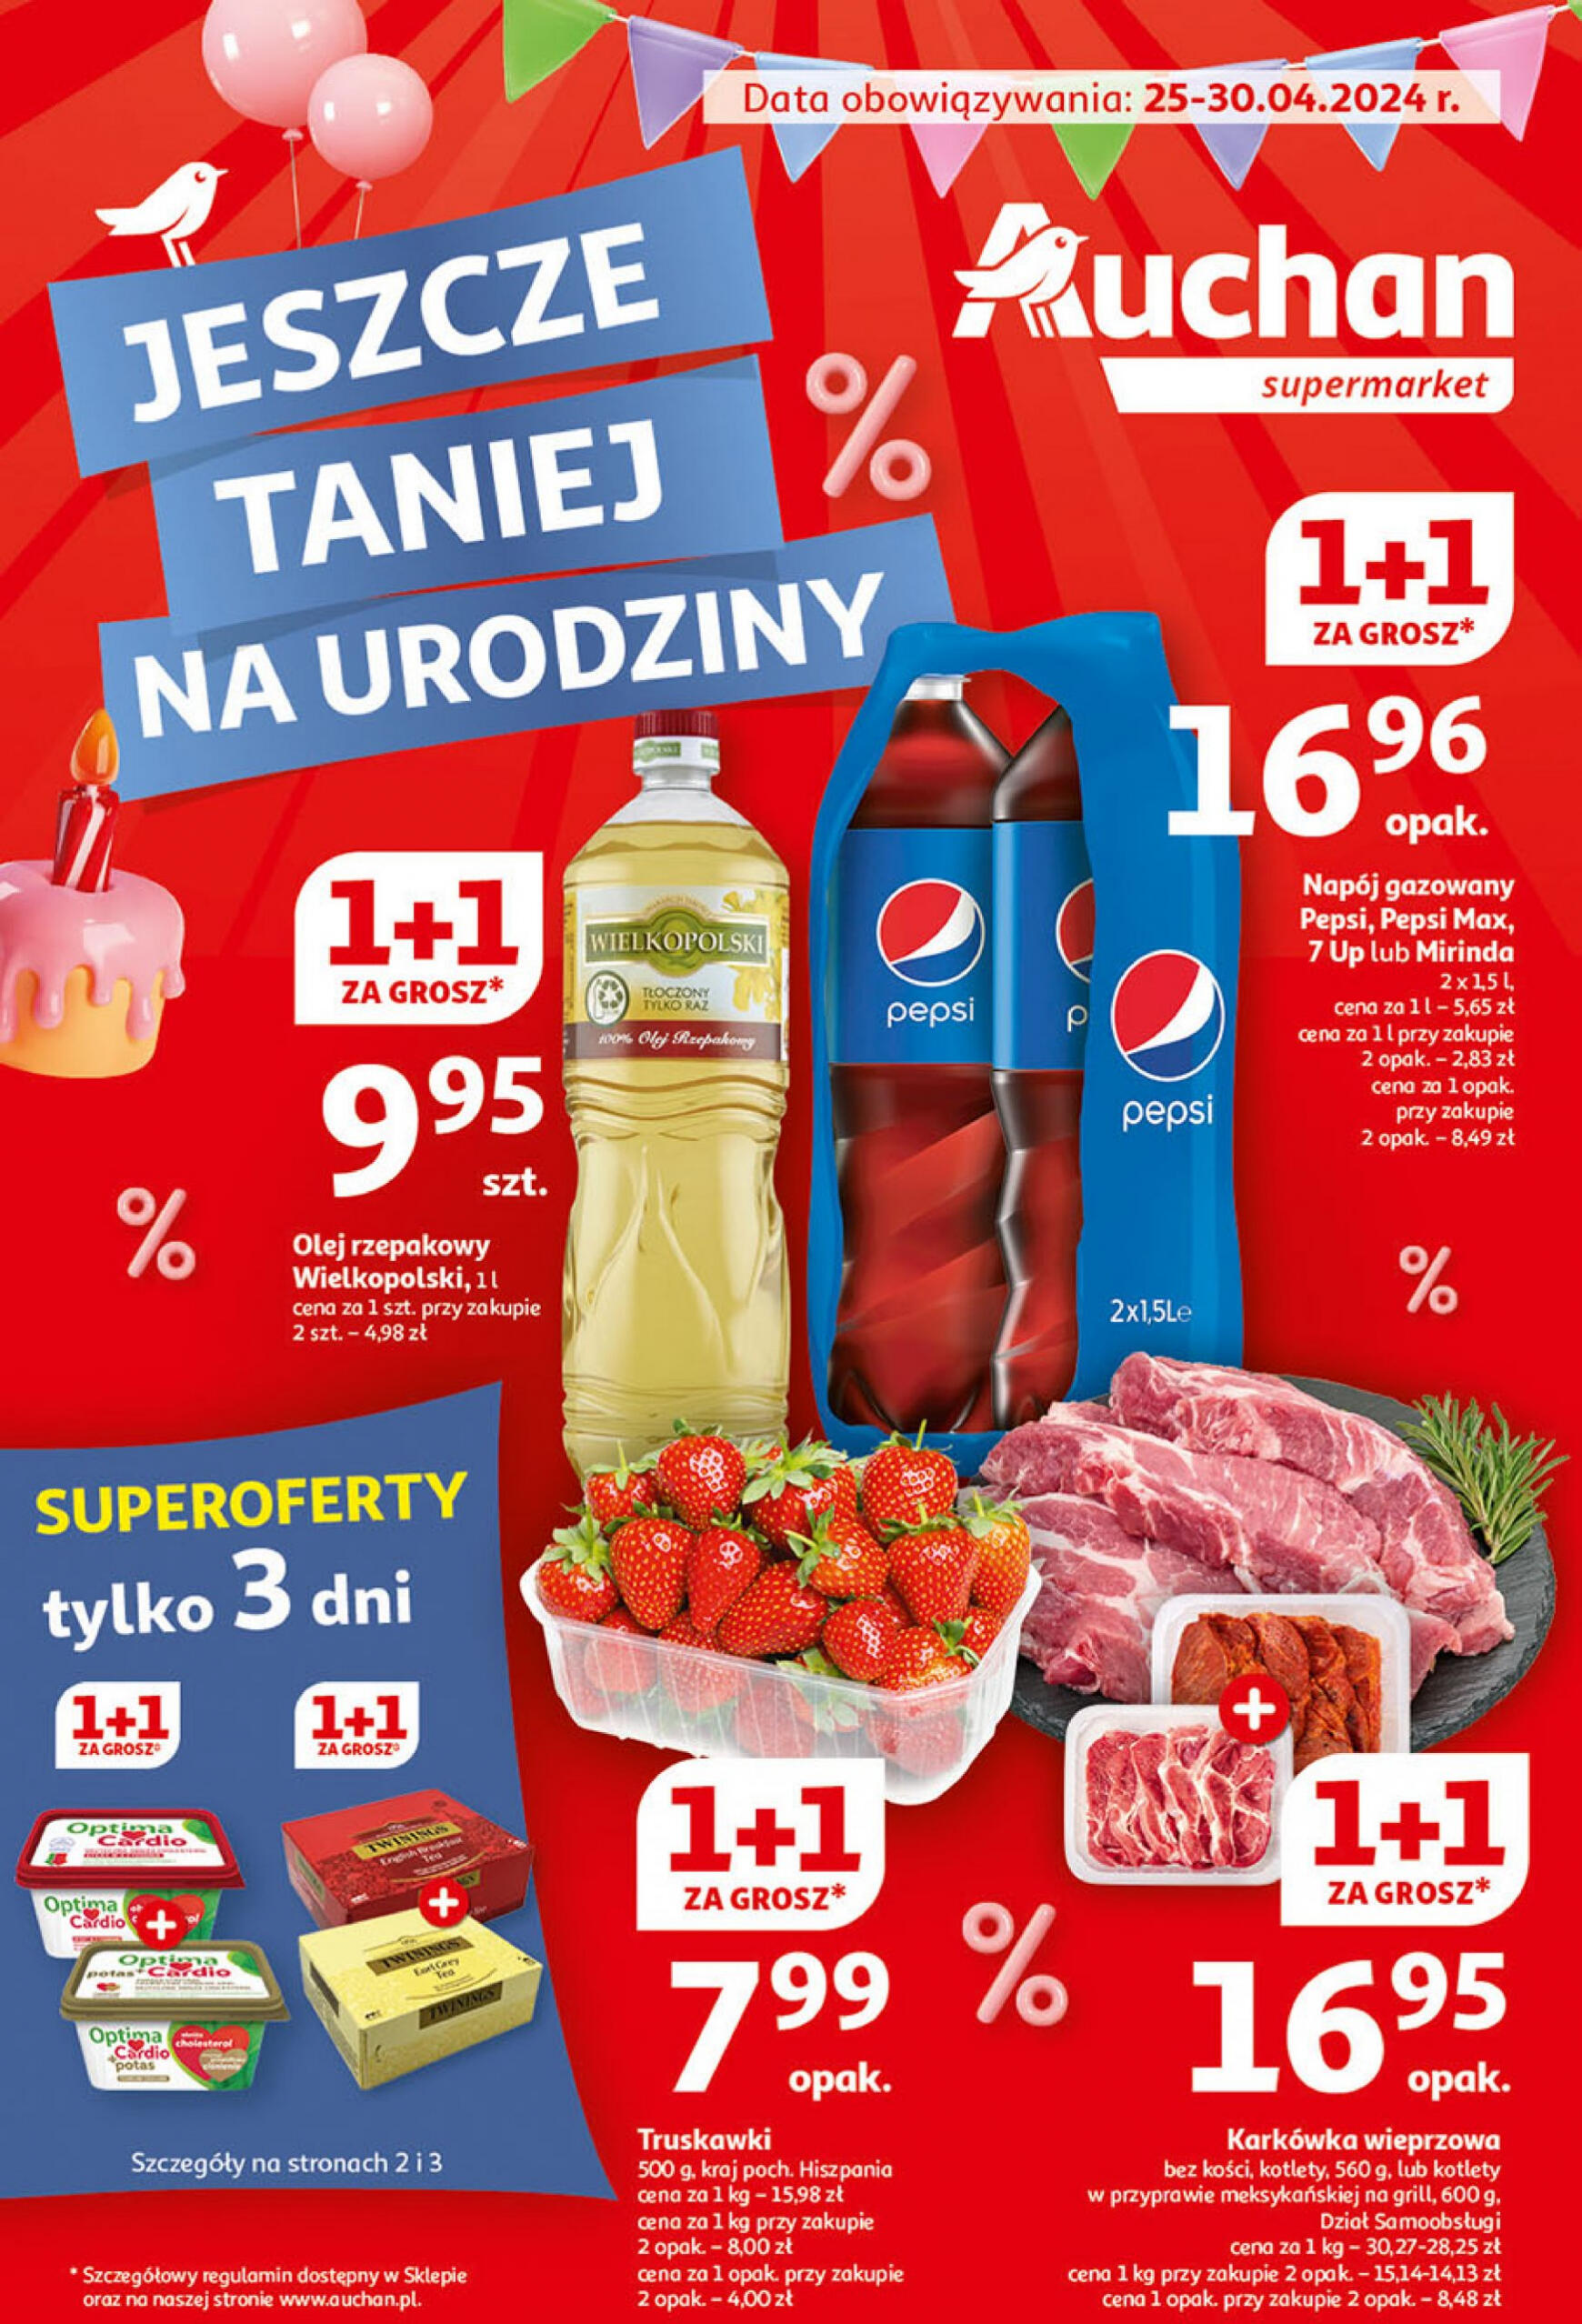 auchan - Supermarket Auchan - Gazetka Jeszcze taniej na urodziny gazetka aktualna ważna od 25.04. - 30.04.